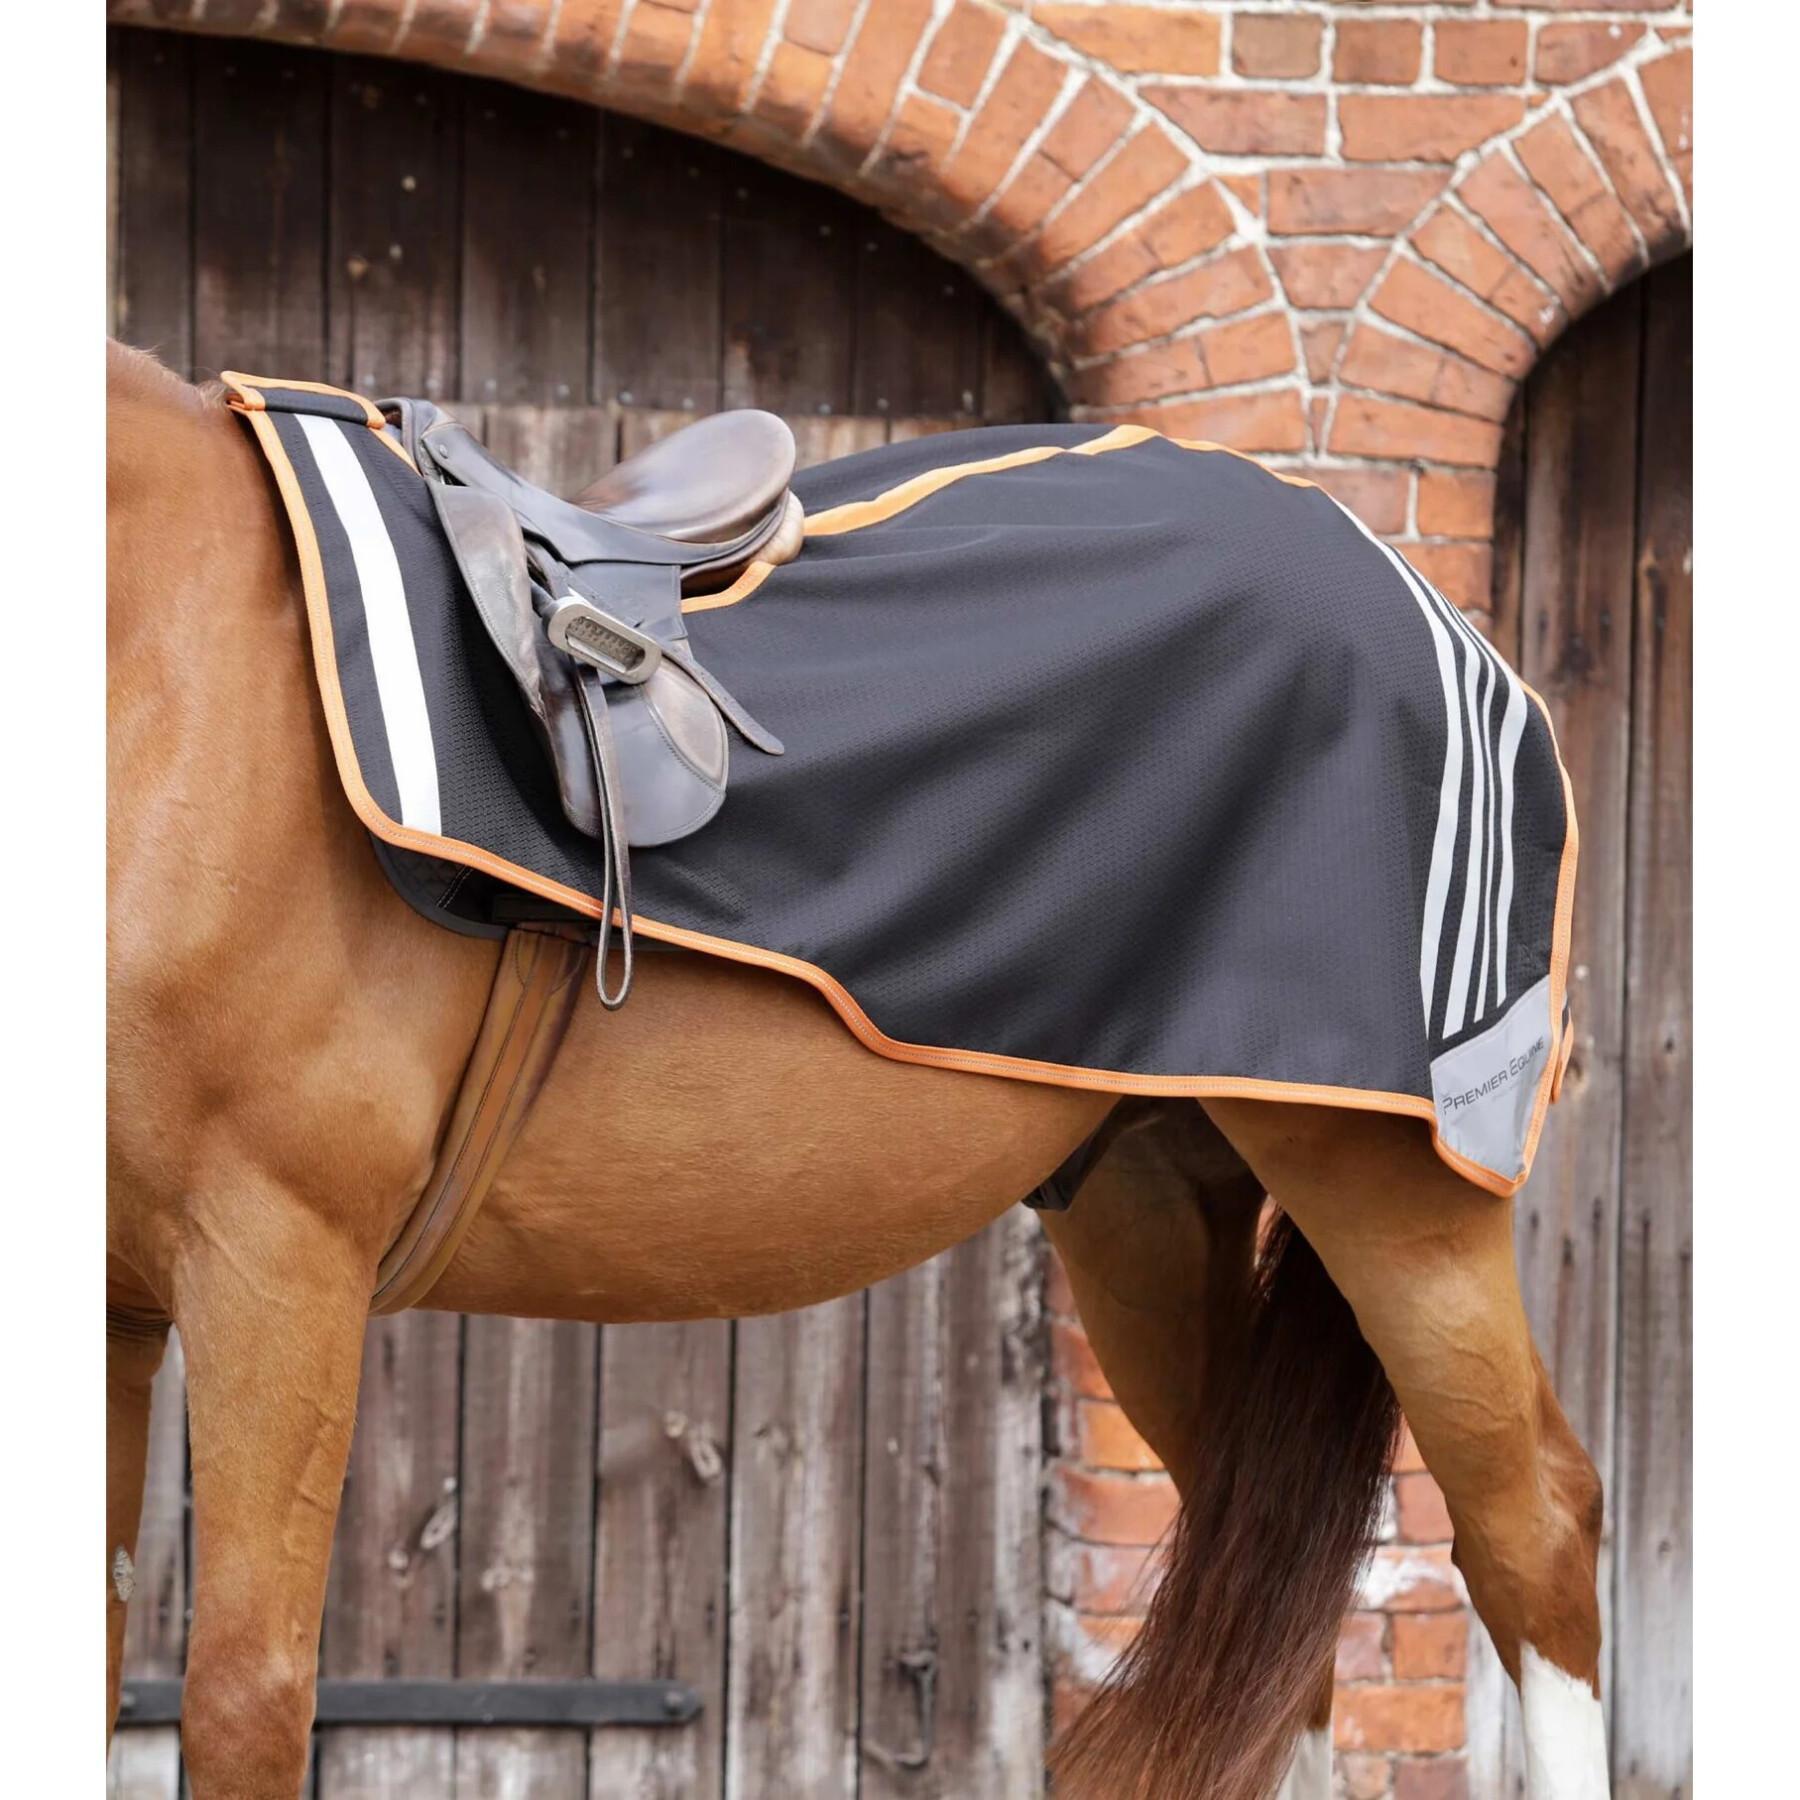 Cobertura renal para cavalos Premier Equine Stratus